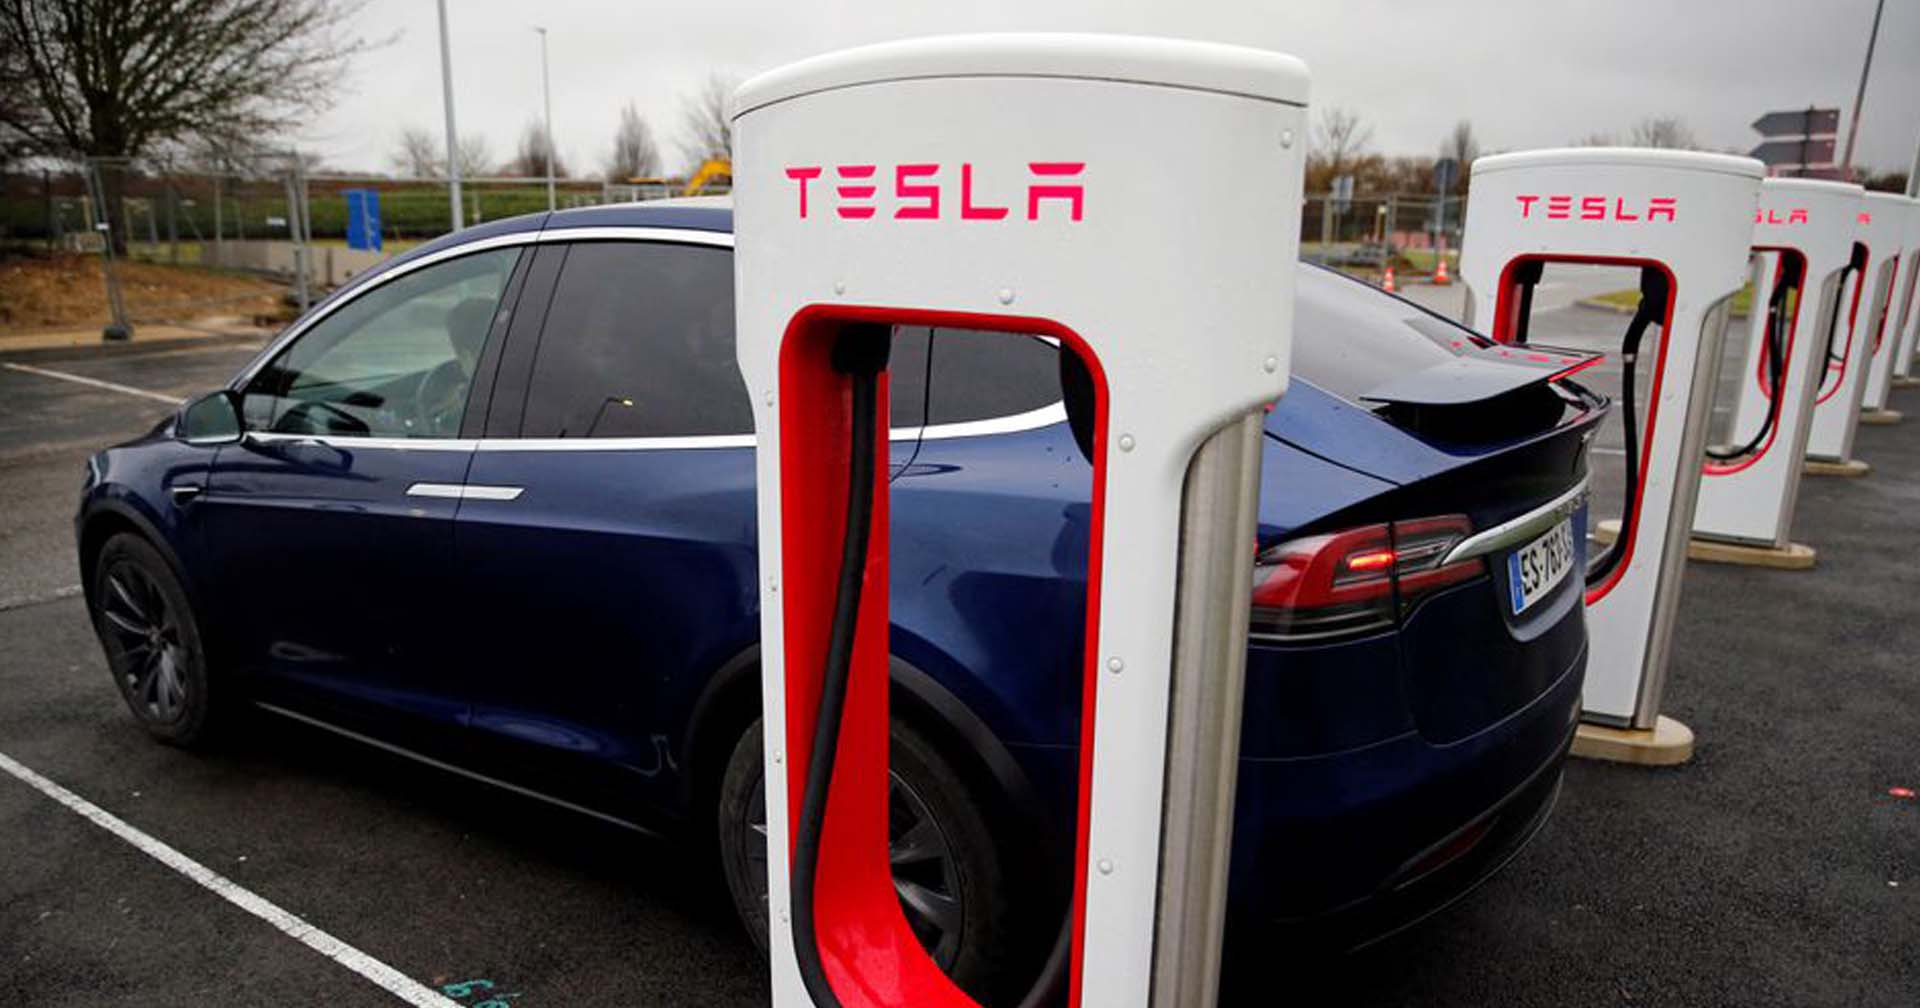 Tesla จะเปิดตัวแท็กซี่ไร้คนขับใน 8 ส.ค. หลังมีข่าวจะยกเลิกผลิตอีวีรุ่นราคาประหยัด